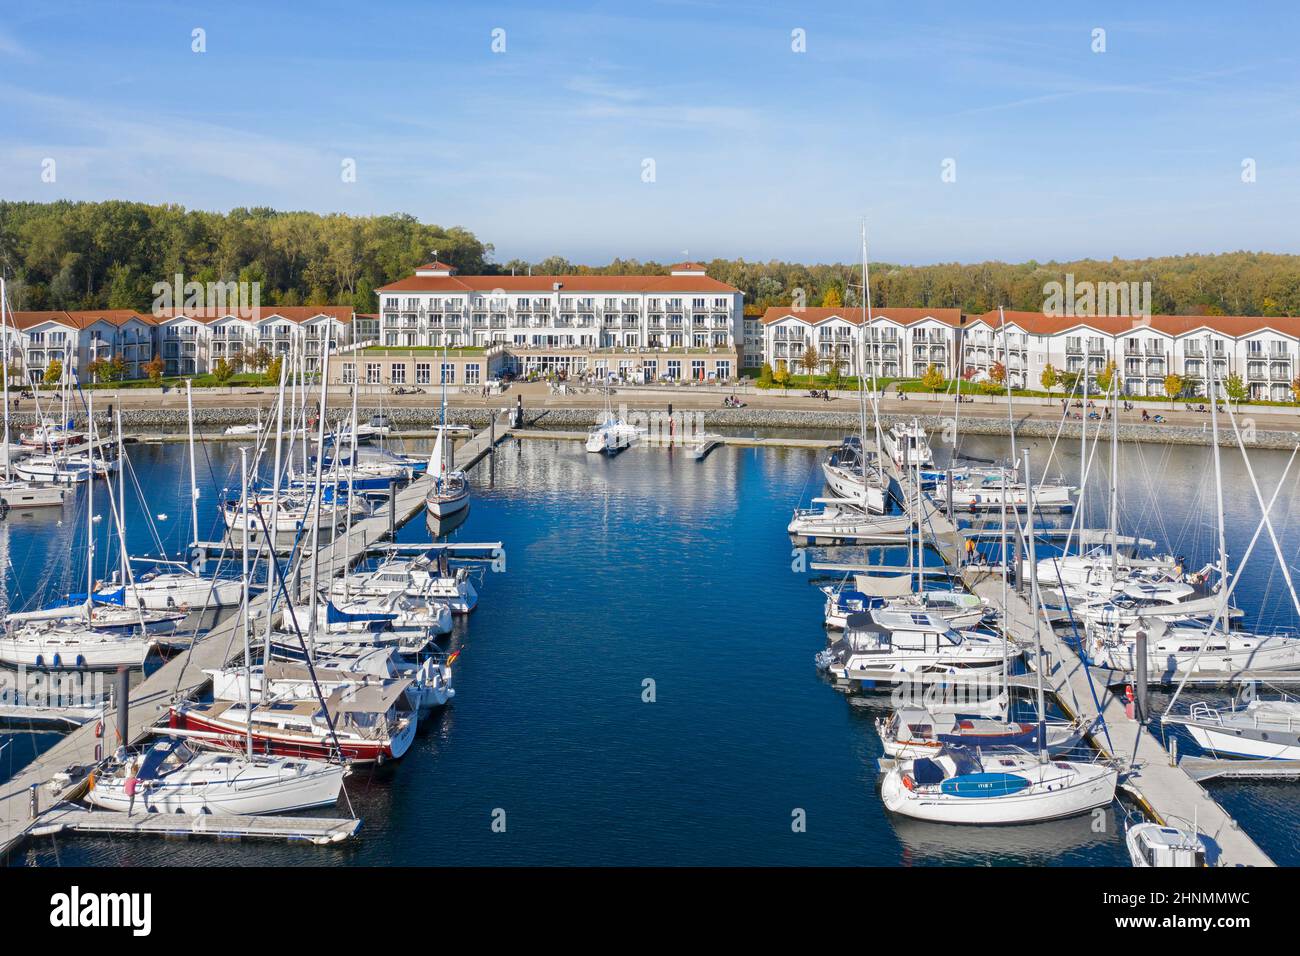 Weiße Wiek Ferienresort in Boltenhagen an der Ostsee mit Hotels und Segelbooten in Marina, Mecklenburg-Vorpommern, Deutschland Stockfoto